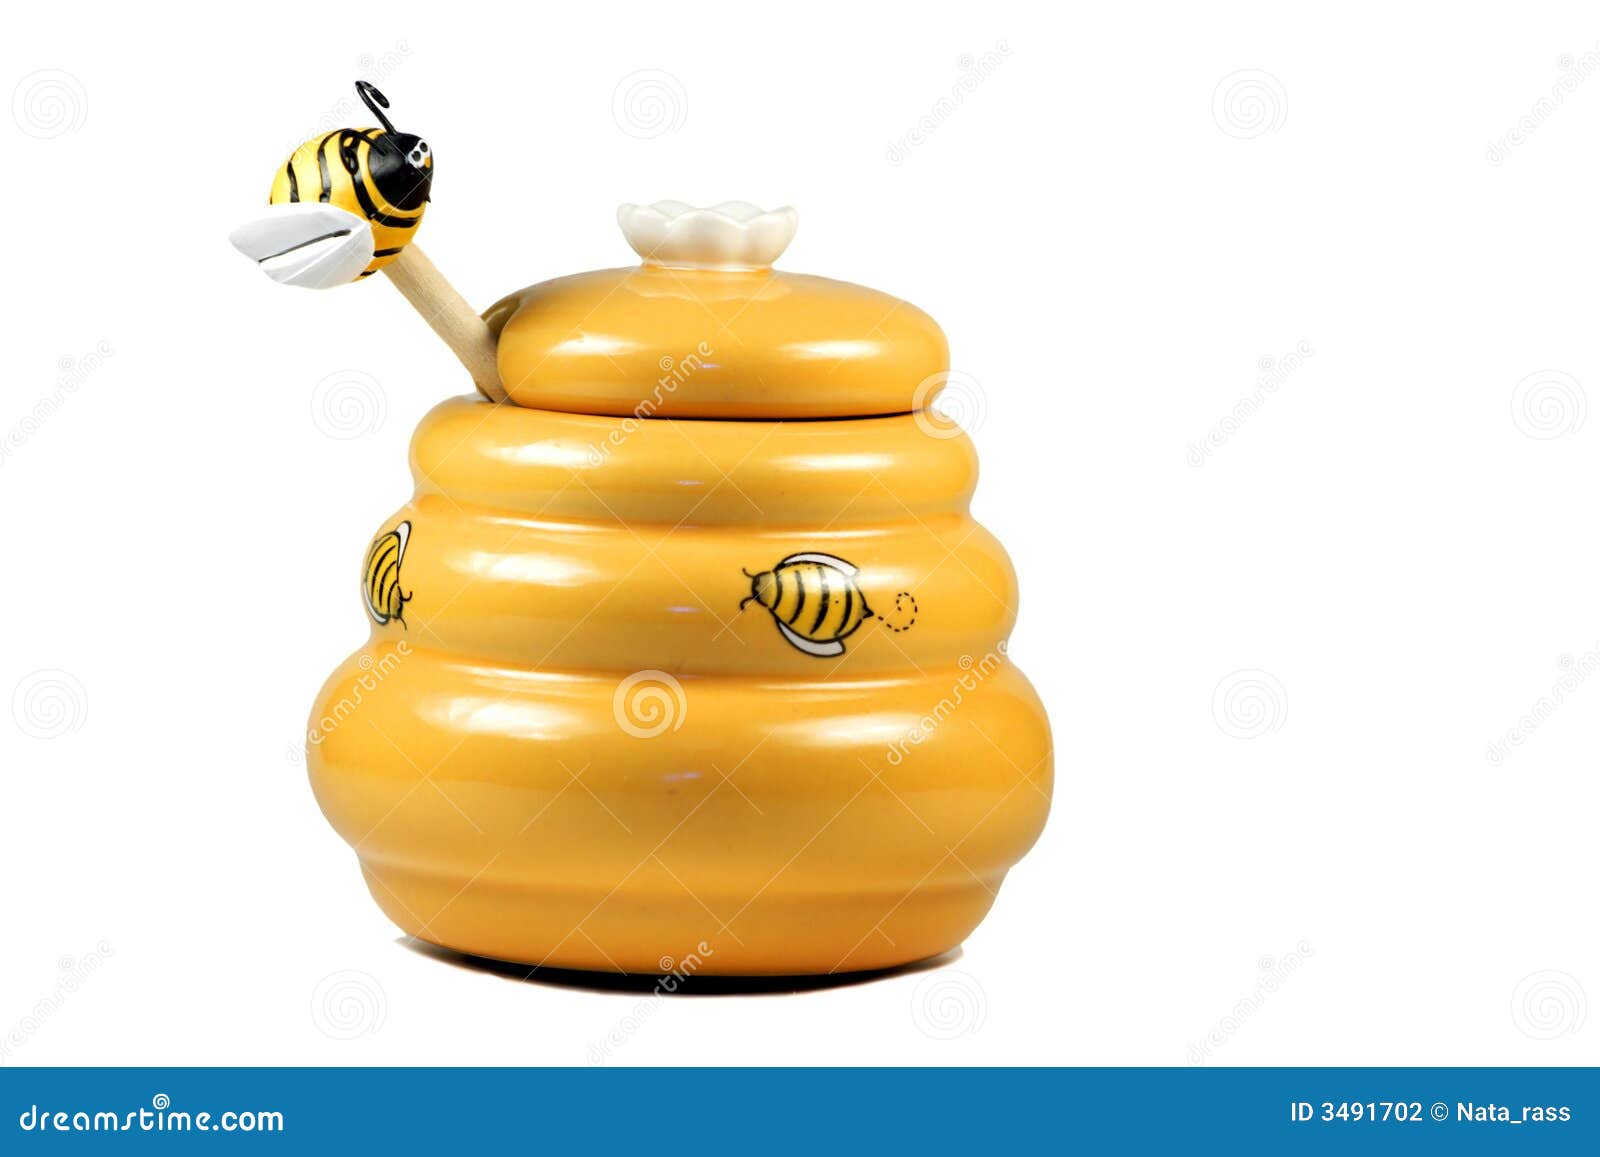 honey ware